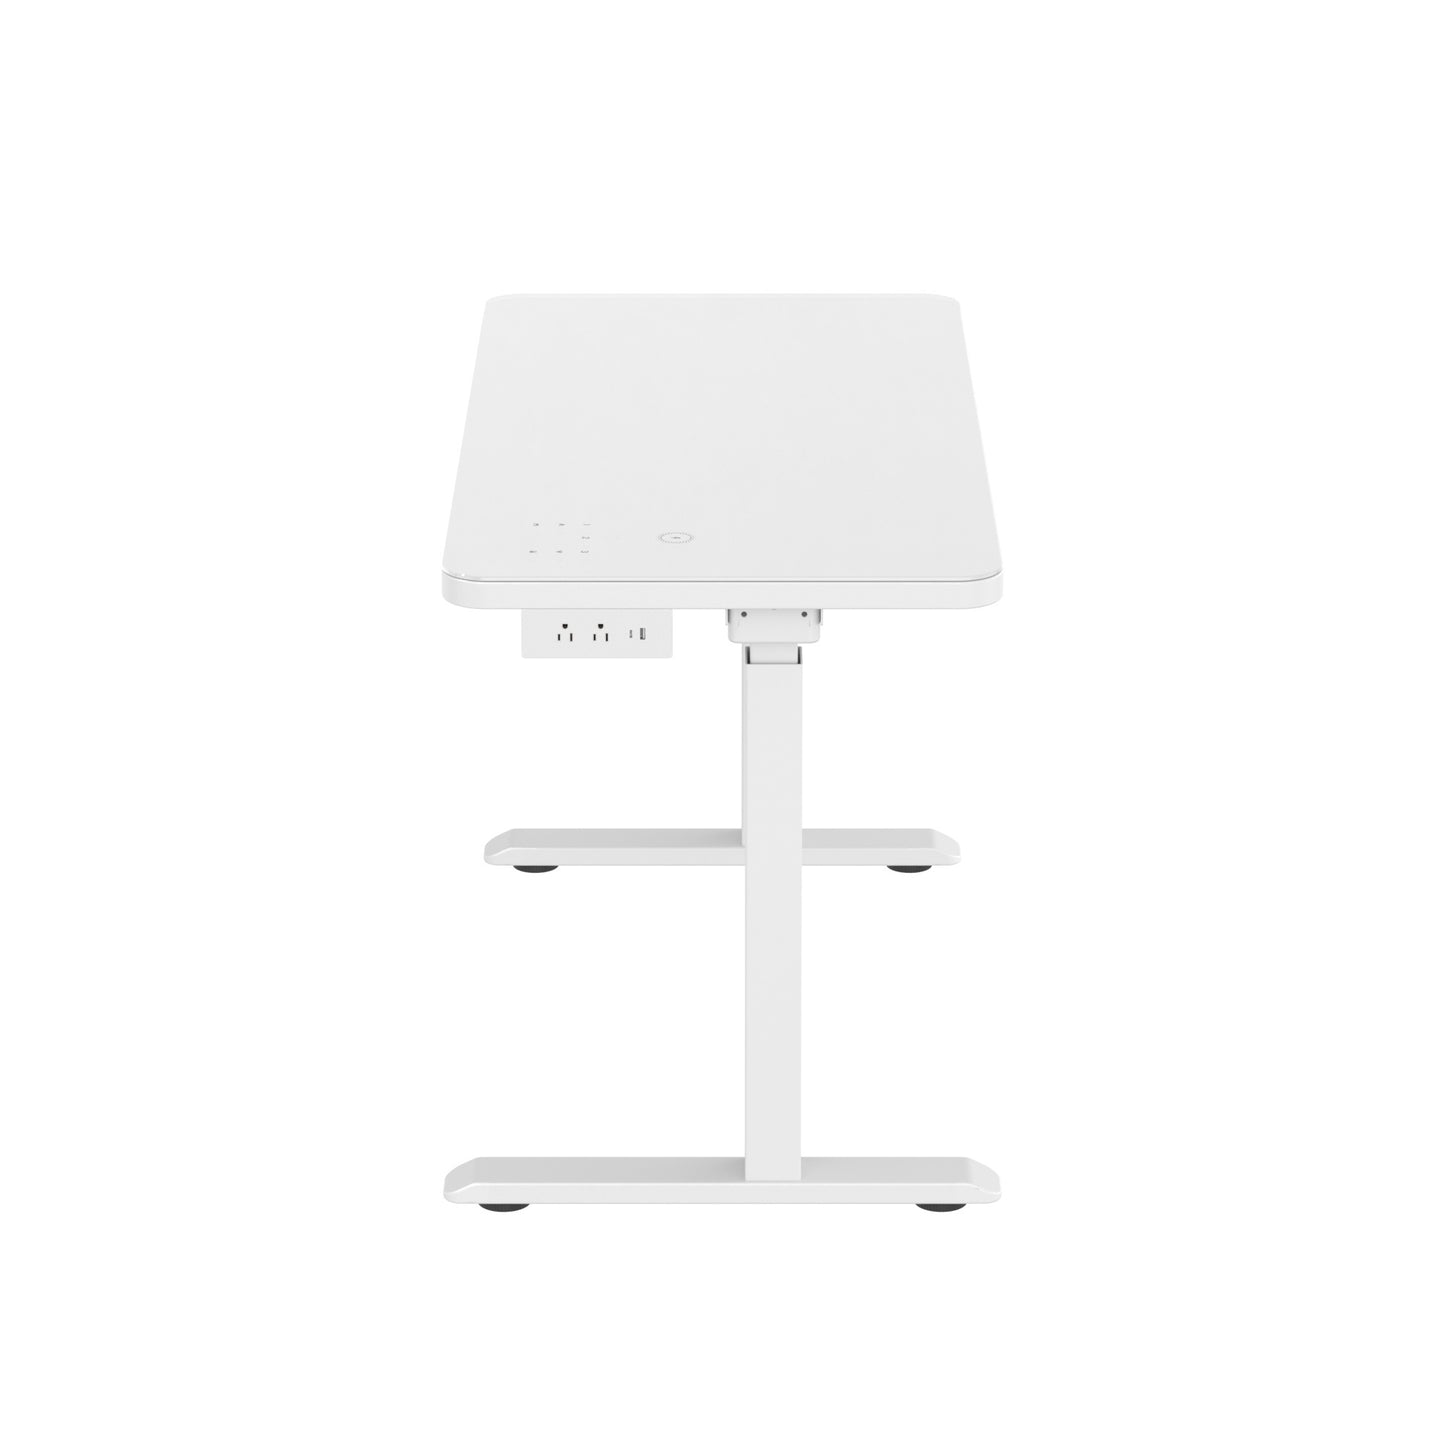 Glass tabletop standing desk
White